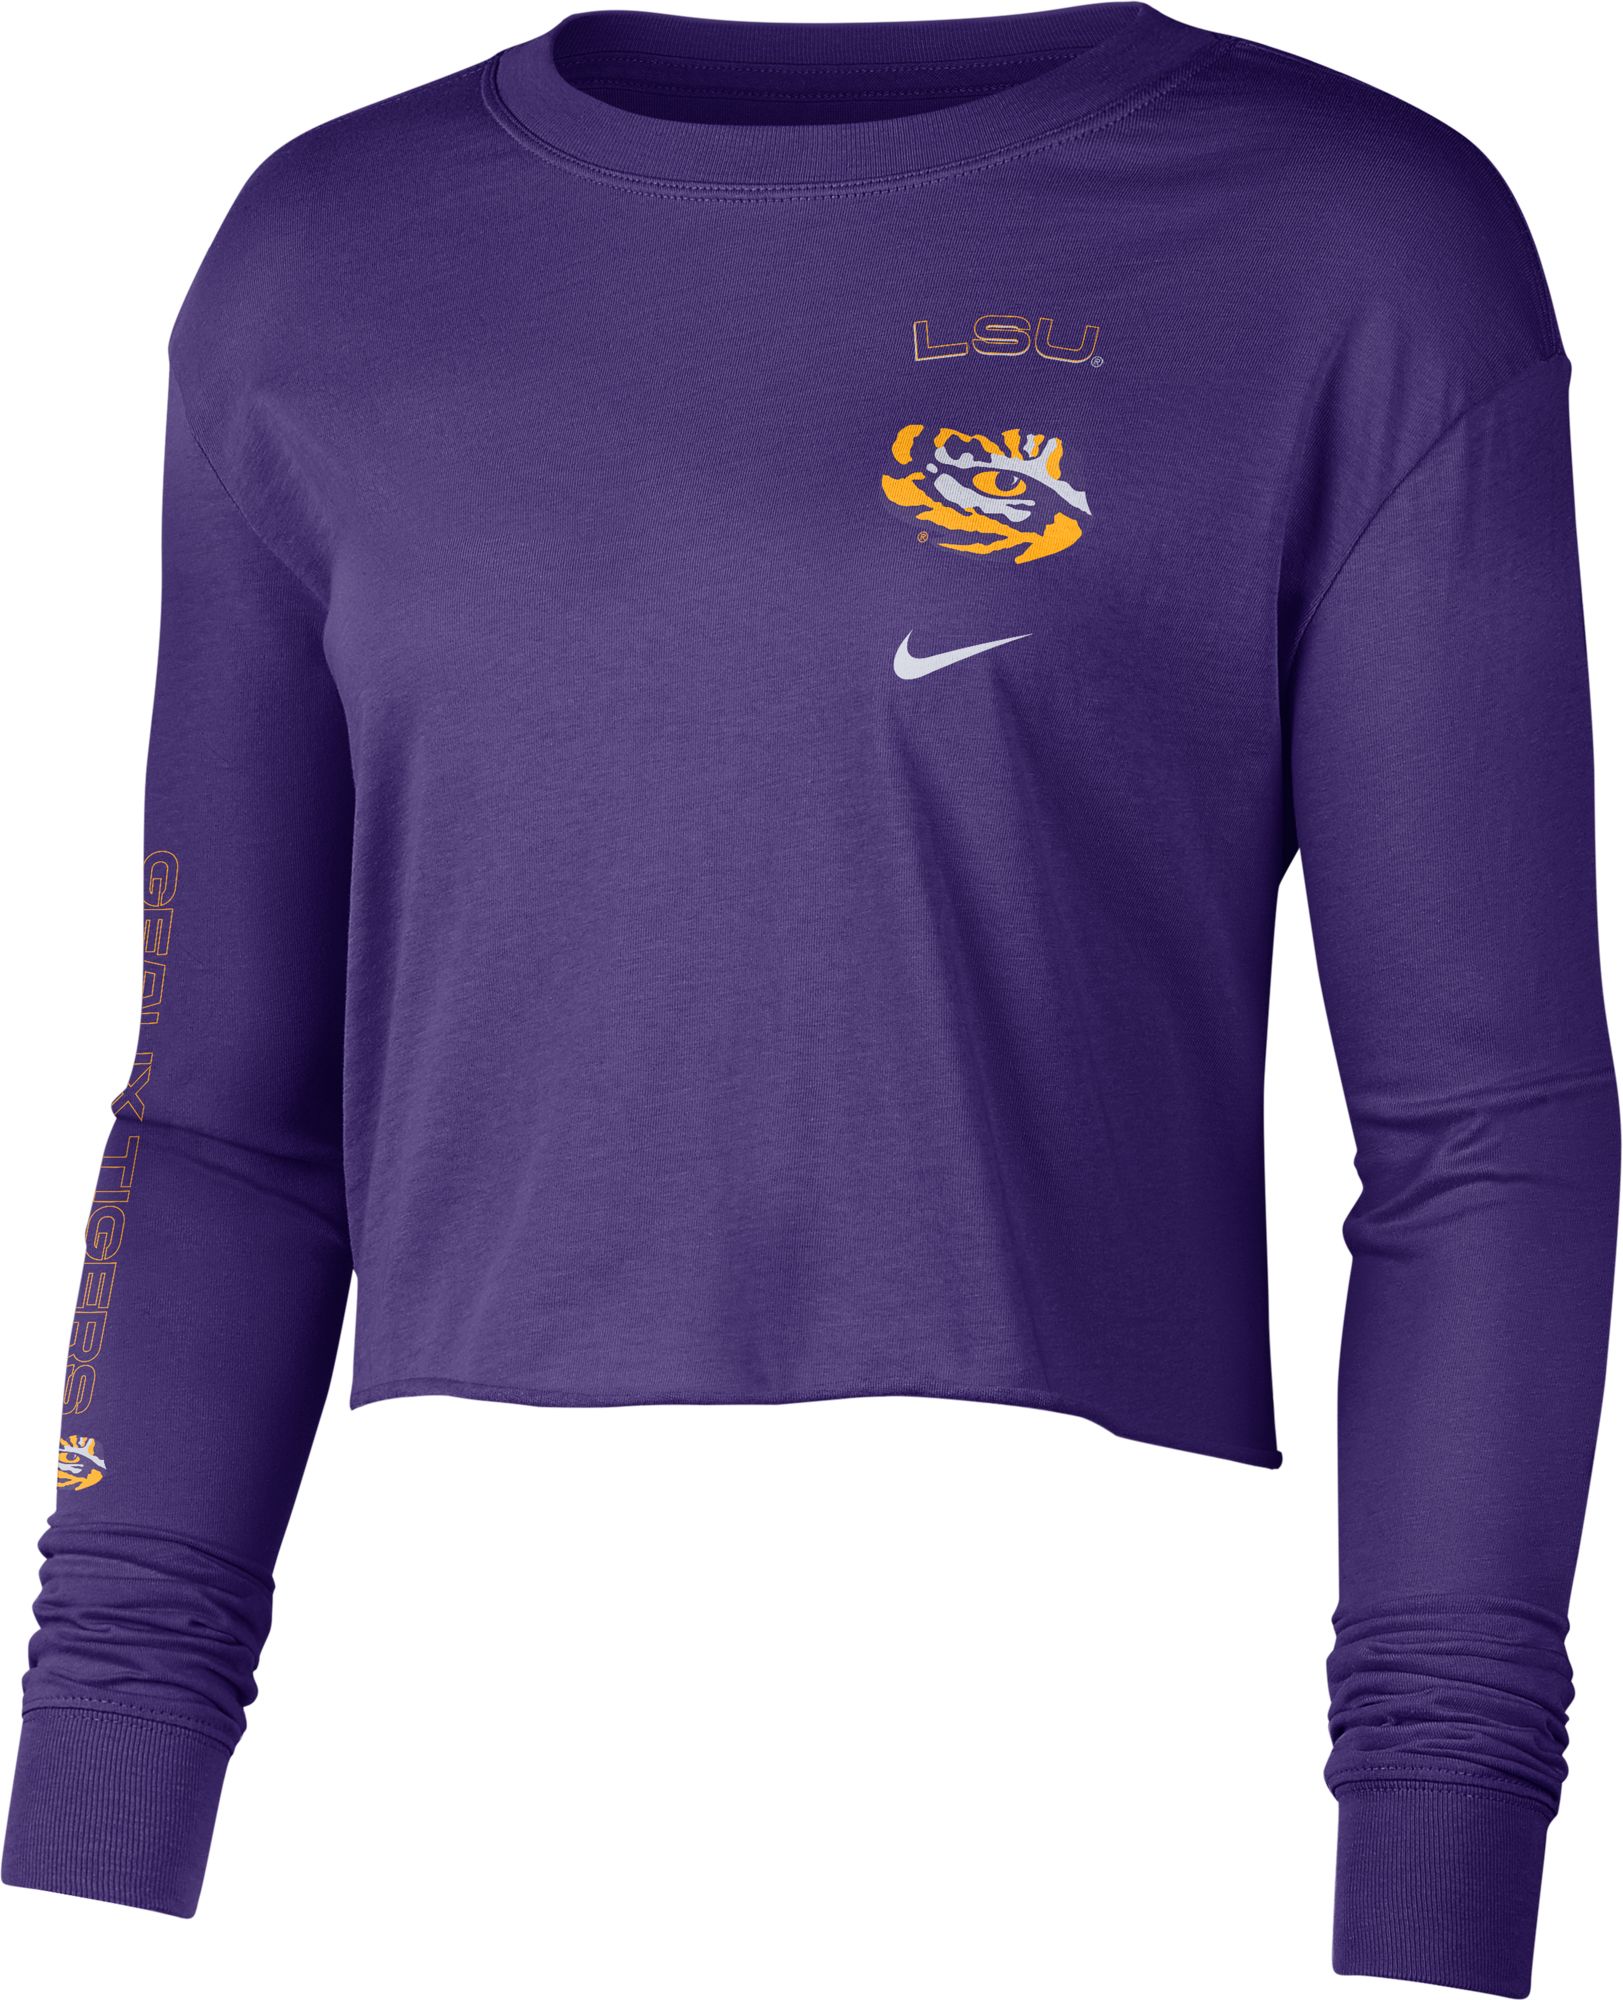 Men's Nike Purple/Black LSU Tigers Sideline Performance Pullover Hoodie